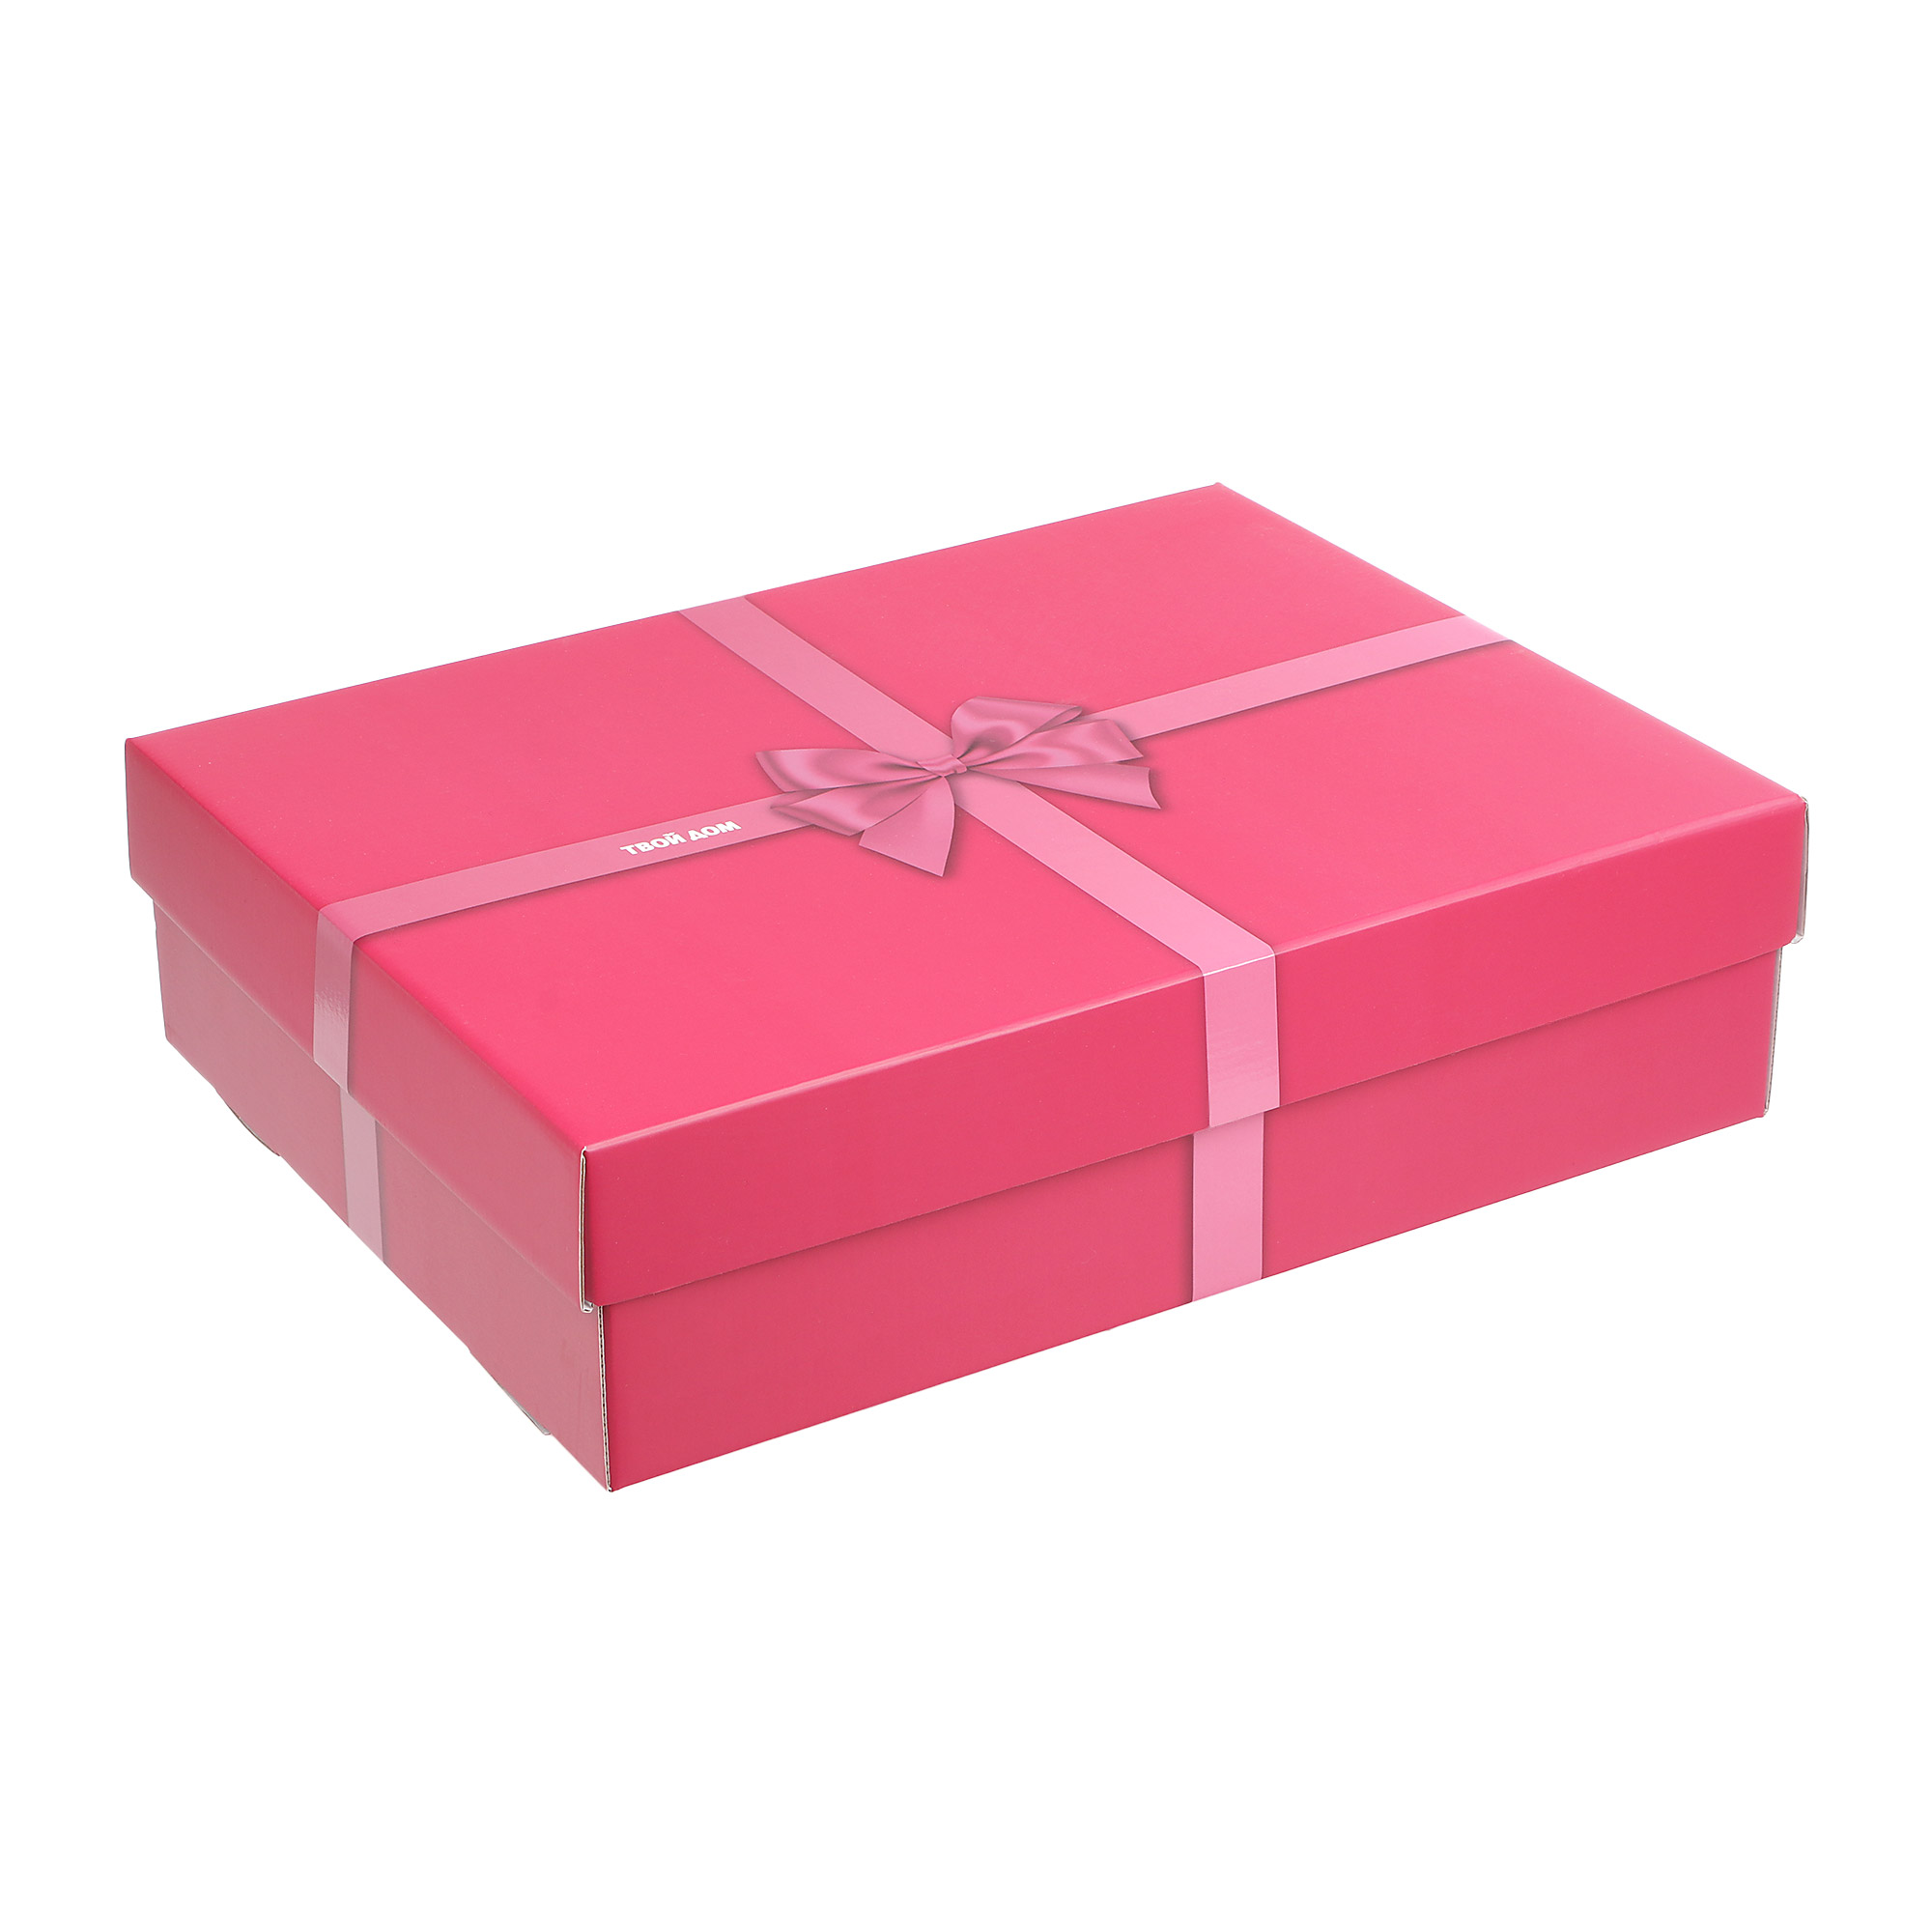 Коробка подарочная Твой Дом розовая  45x35x12 коробка подарочная твой дом крафт 45x35x12